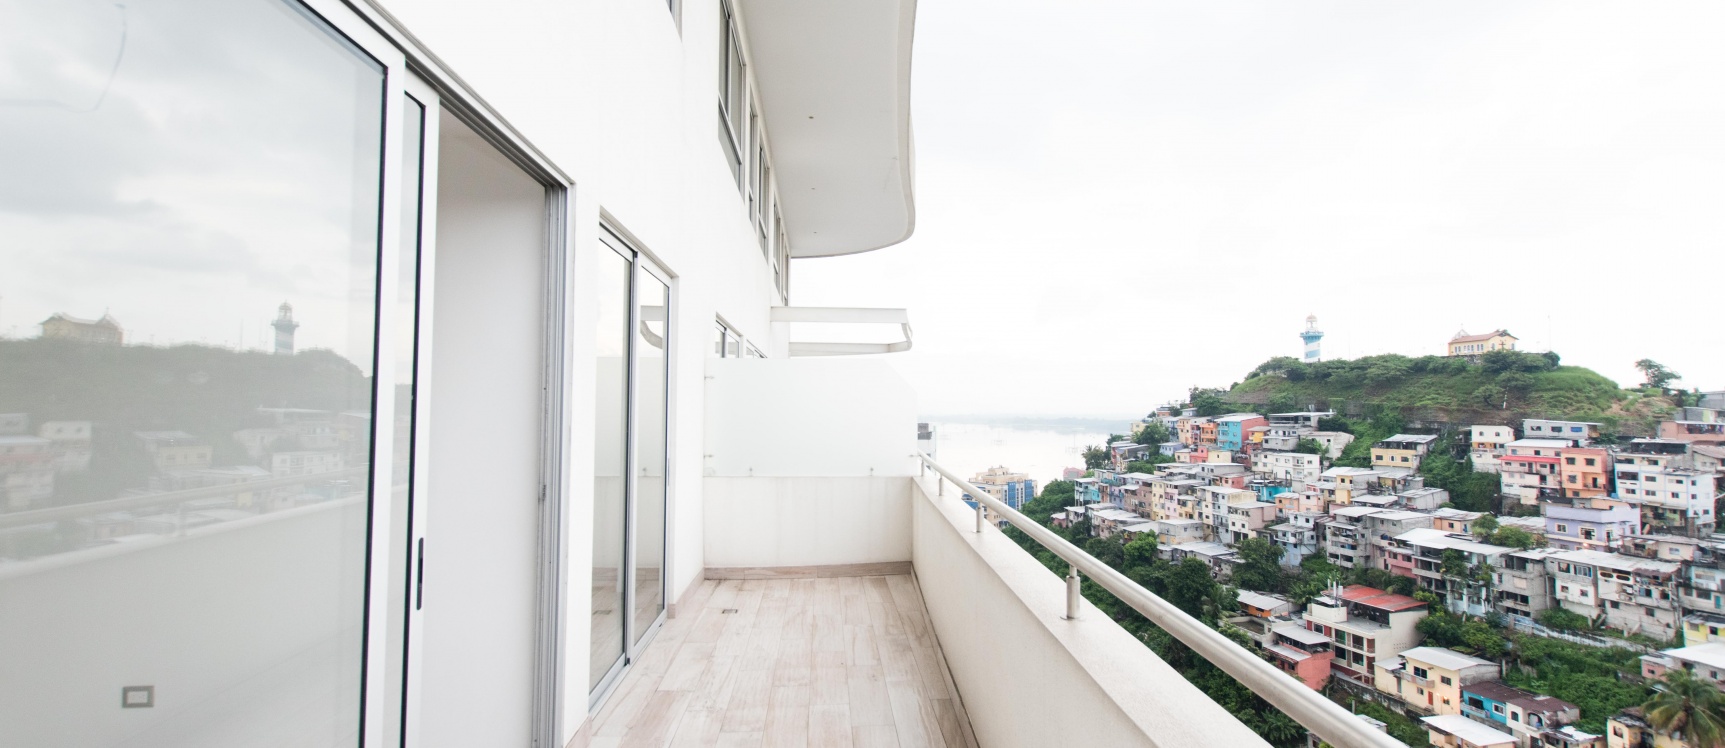 GeoBienes - Departamento de 3 habitaciones en venta Santana Lofts, Puerto Santa Ana - Plusvalia Guayaquil Casas de venta y alquiler Inmobiliaria Ecuador